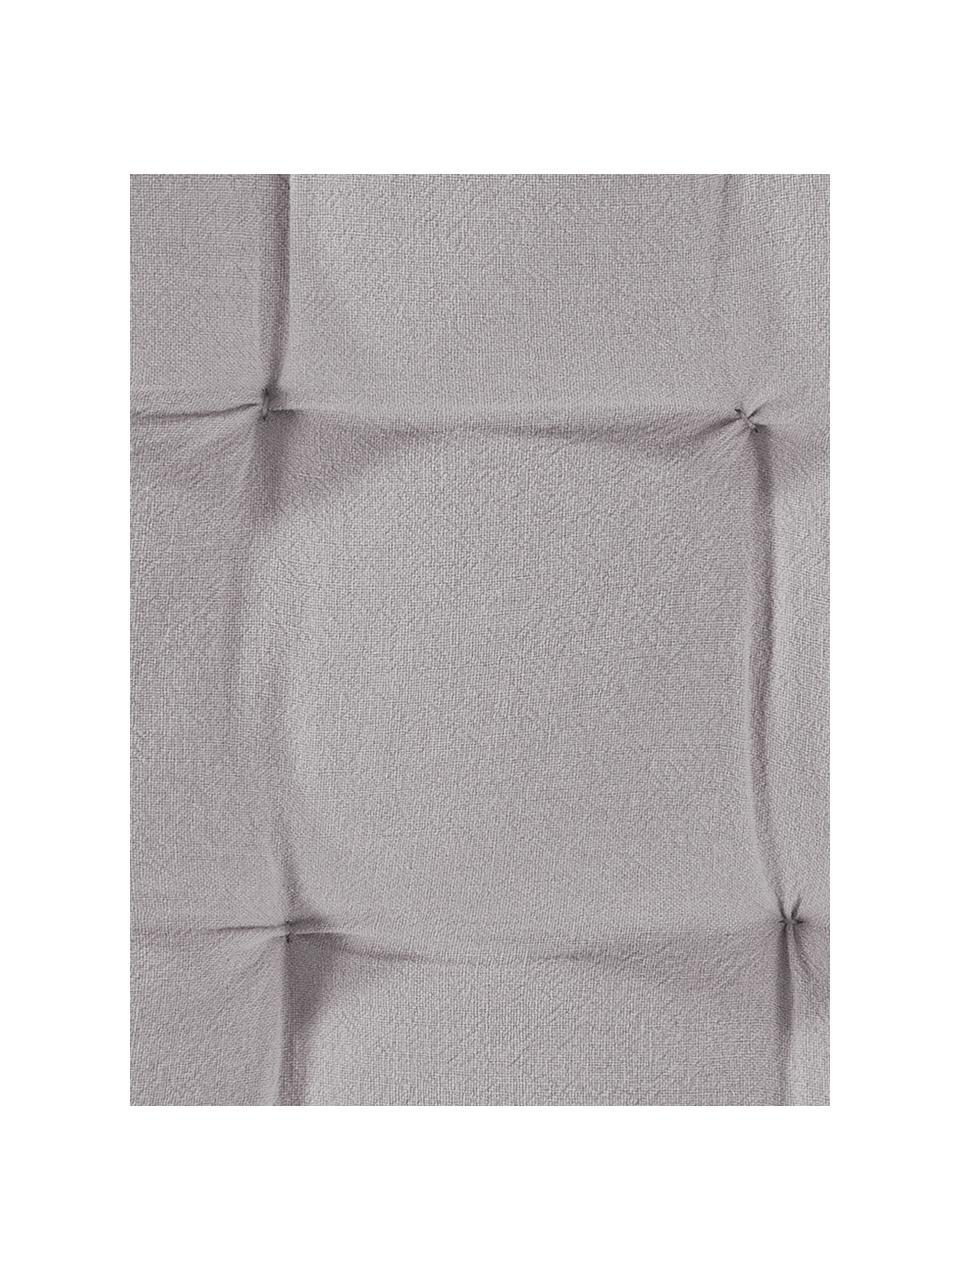 Sitzkissen Billie, 100% Baumwolle, Grau, 40 x 40 cm